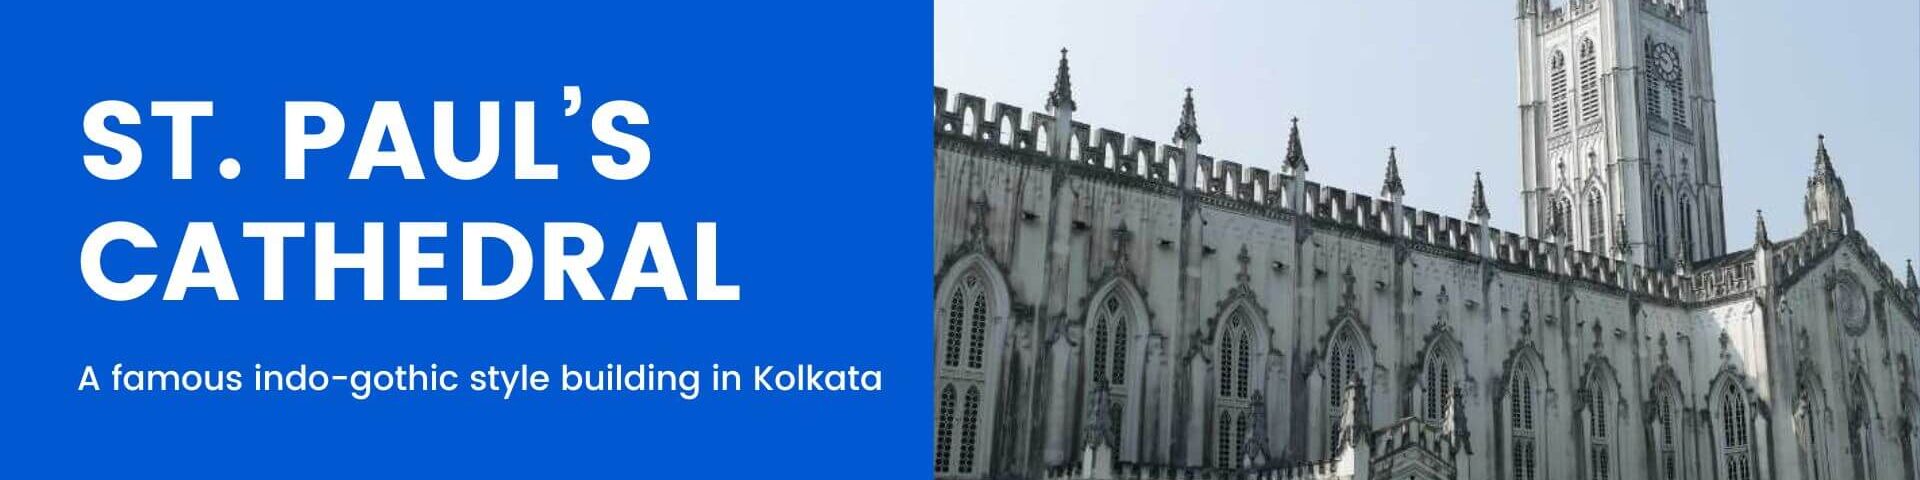 St. Paul’s Cathedral Kolkata